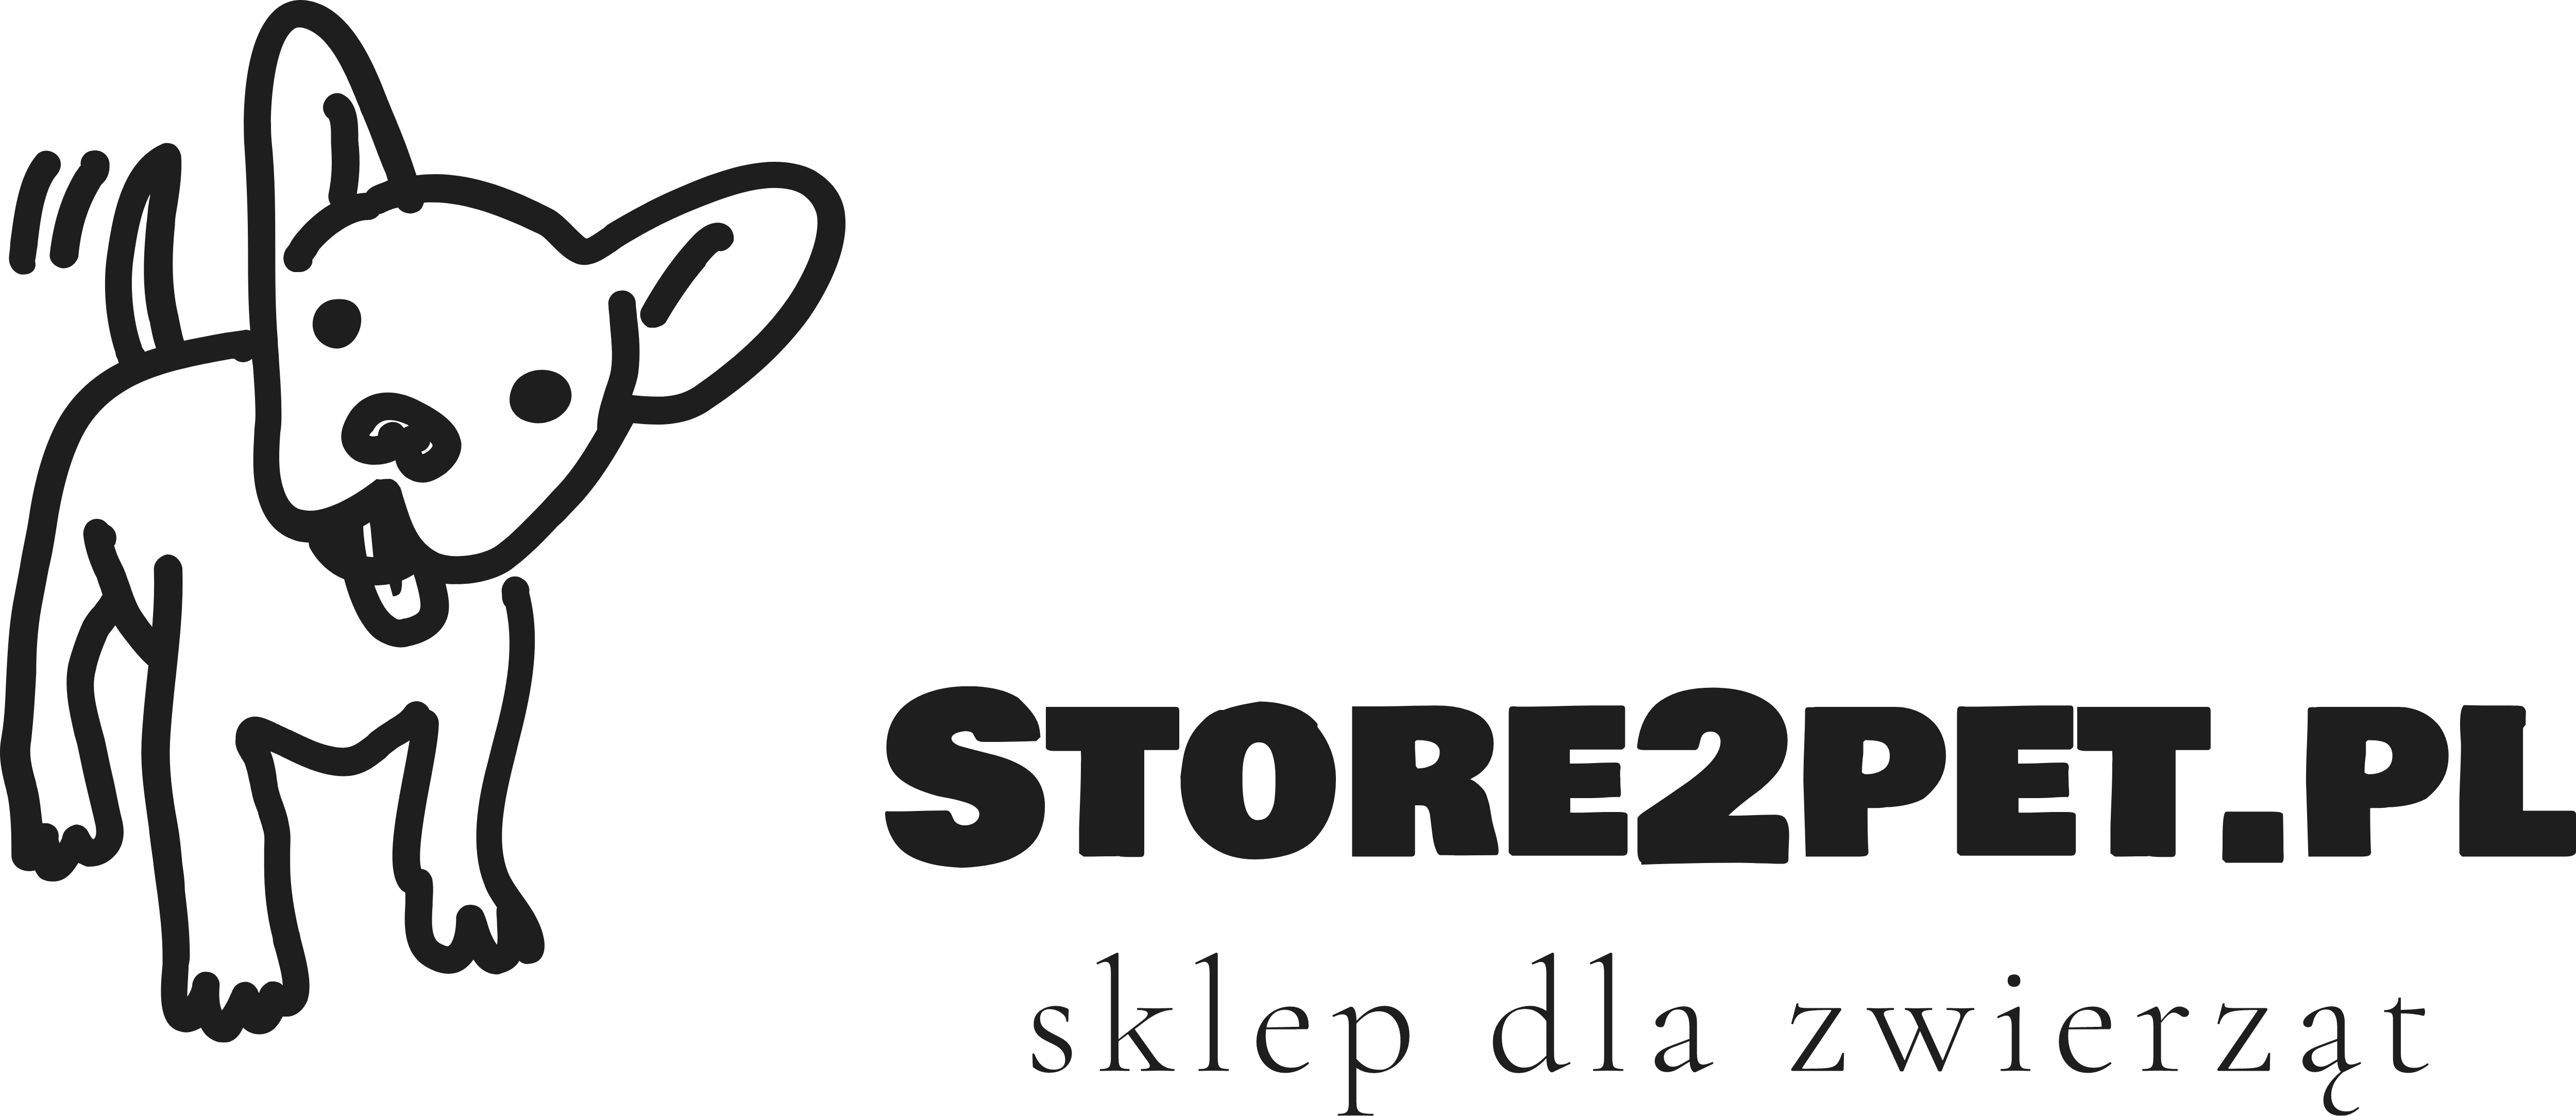  Store2pet - Sklep dla zwierząt 